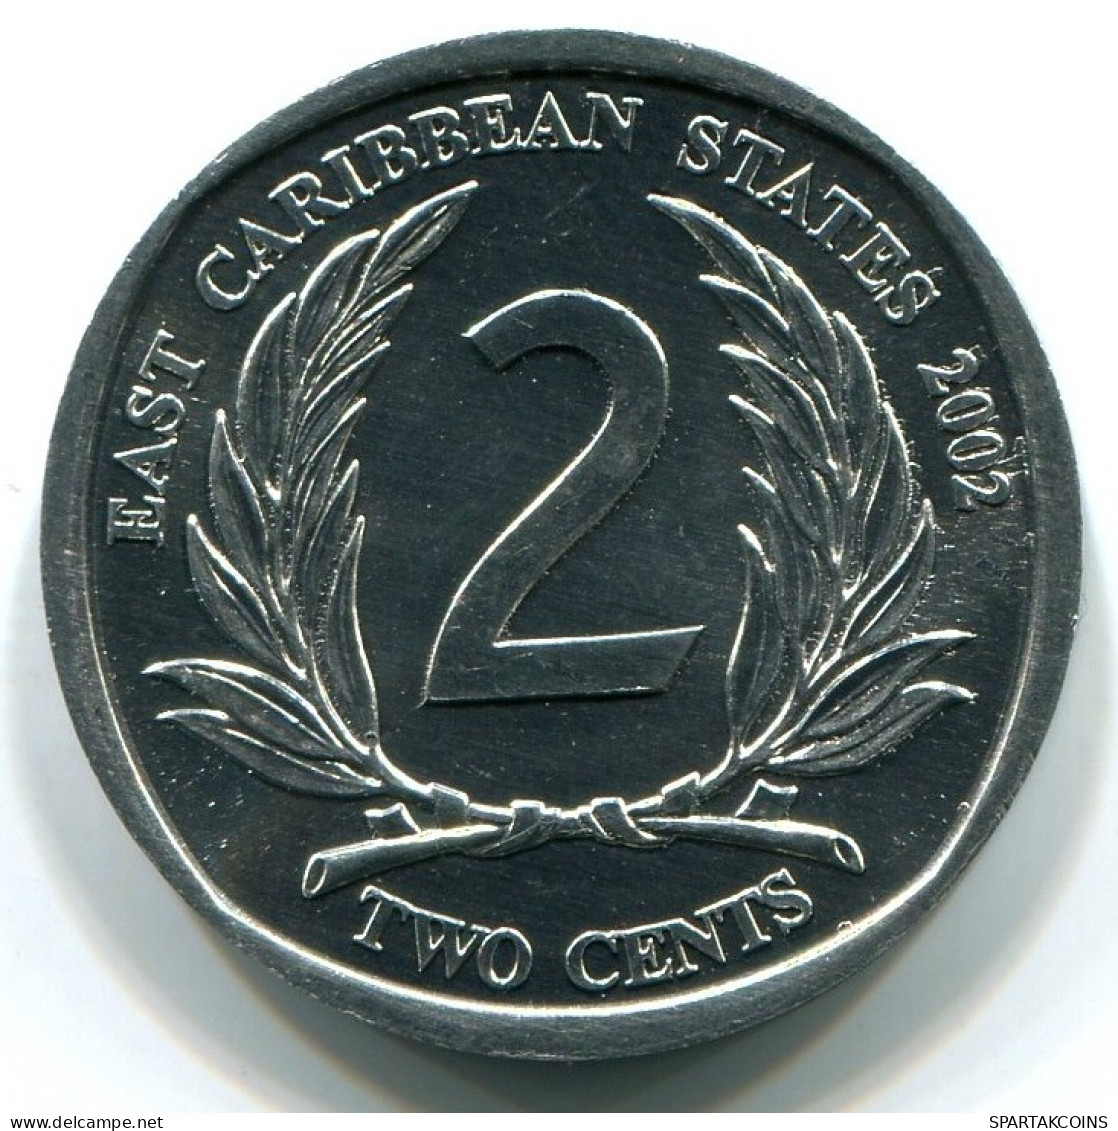 2 CENTS 2002 OST-KARIBIK EAST CARIBBEAN UNC Münze #W10878.D.A - East Caribbean States